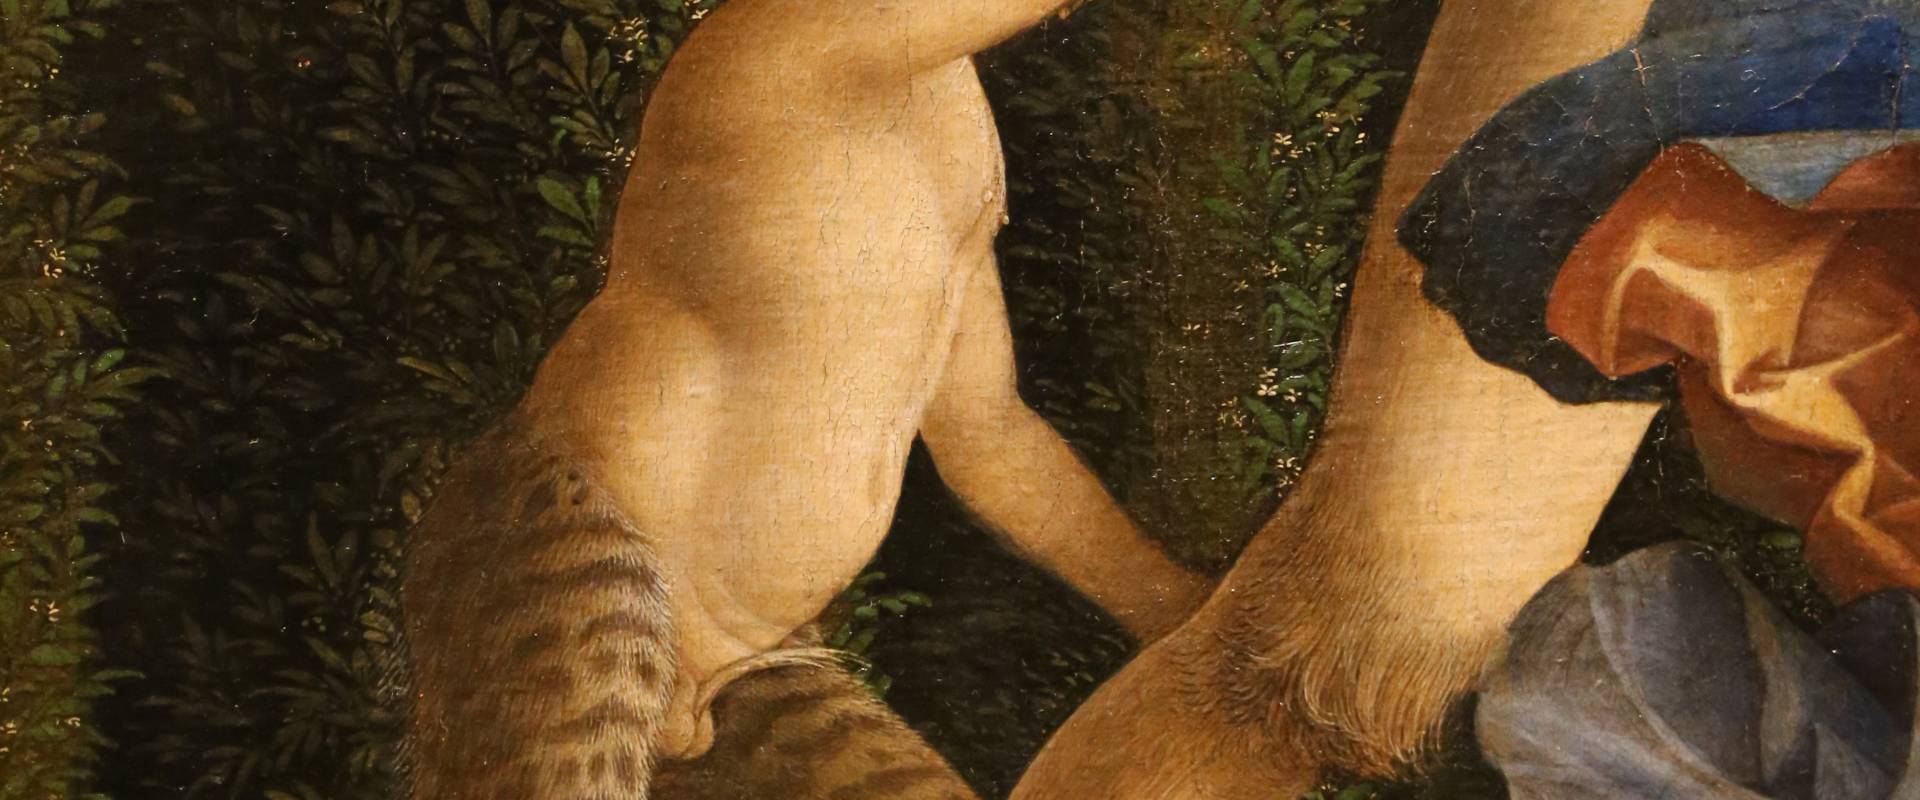 Andrea mantegna, minerva scaccia i vizi dal giardino delle virtù, 1497-1502 ca. (louvre) 20 foto di Sailko